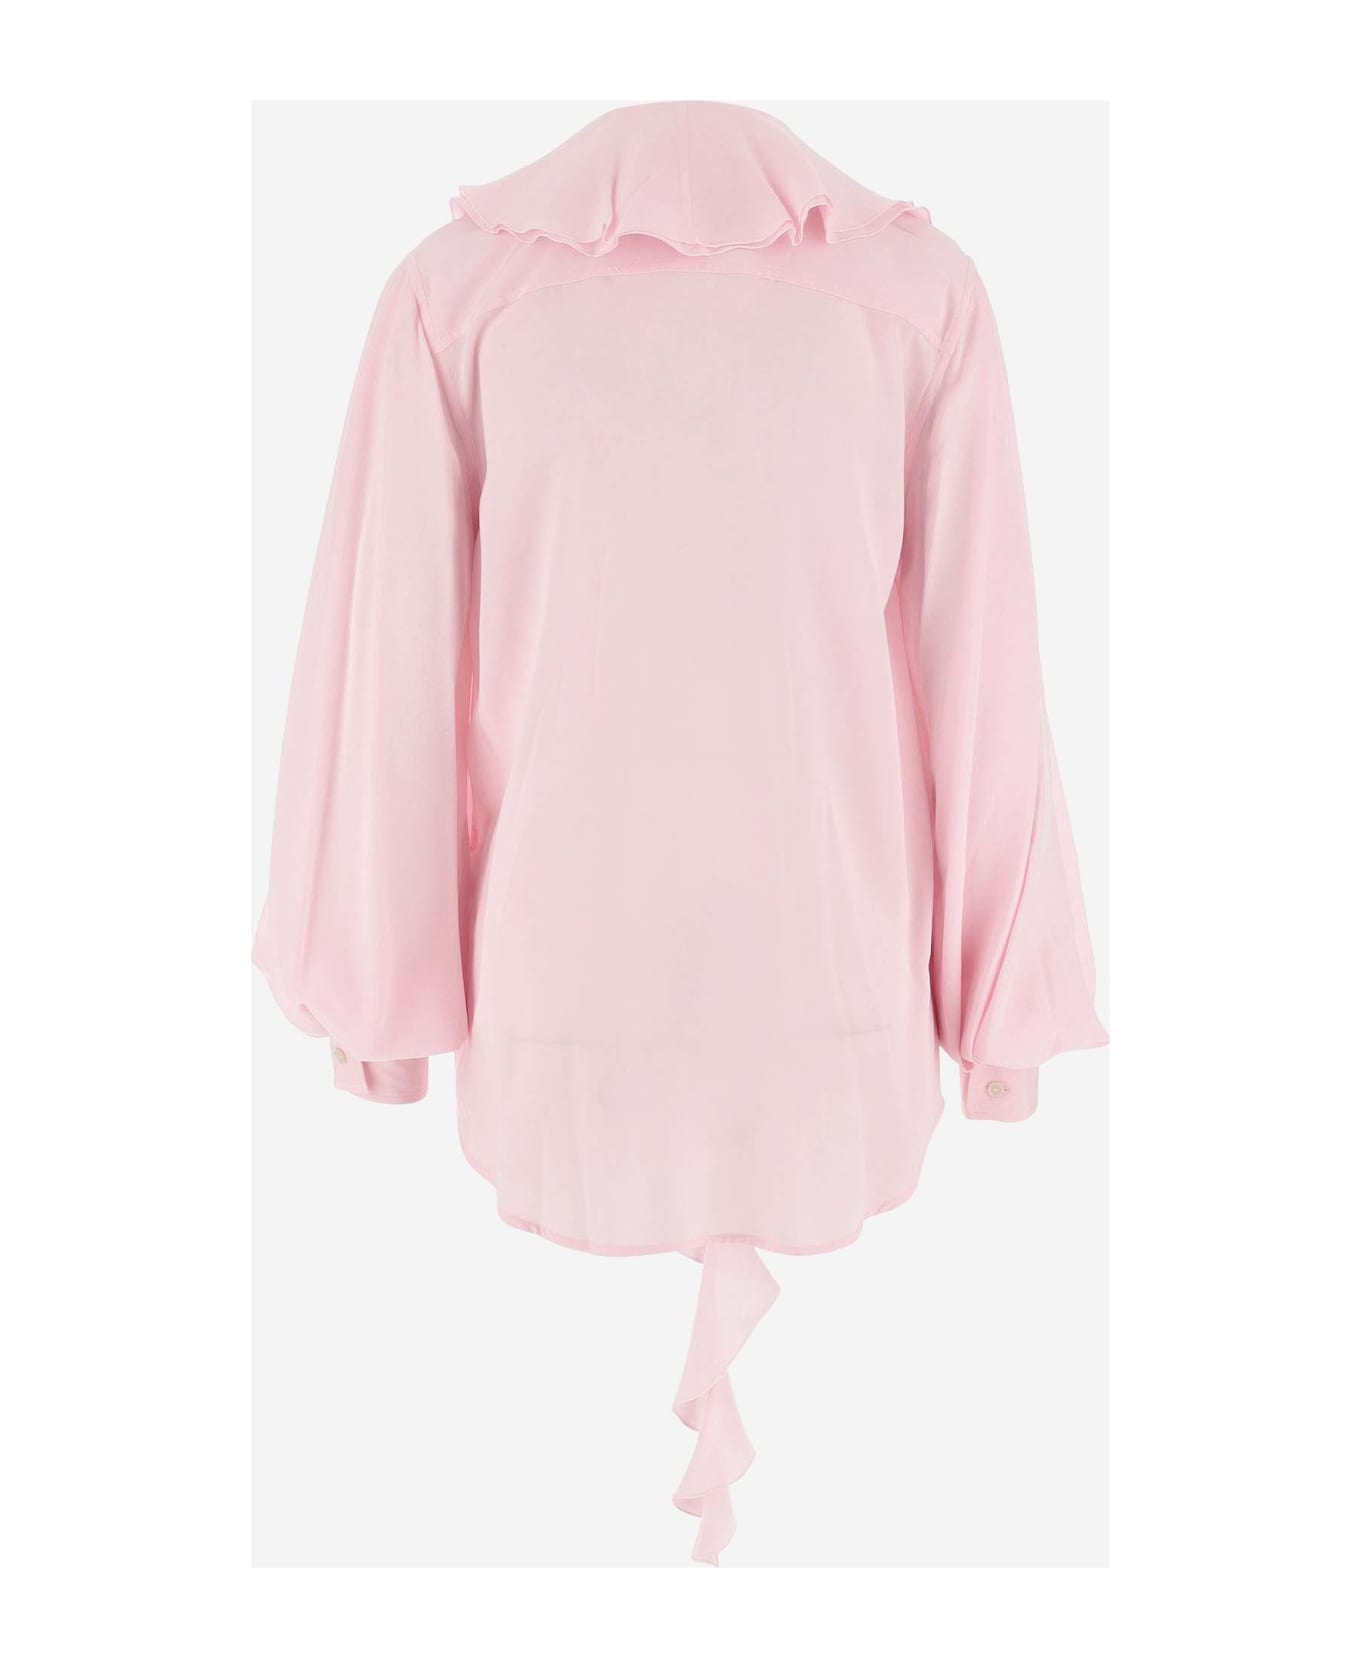 Victoria Beckham Silk Shirt With Ruffles - Pink